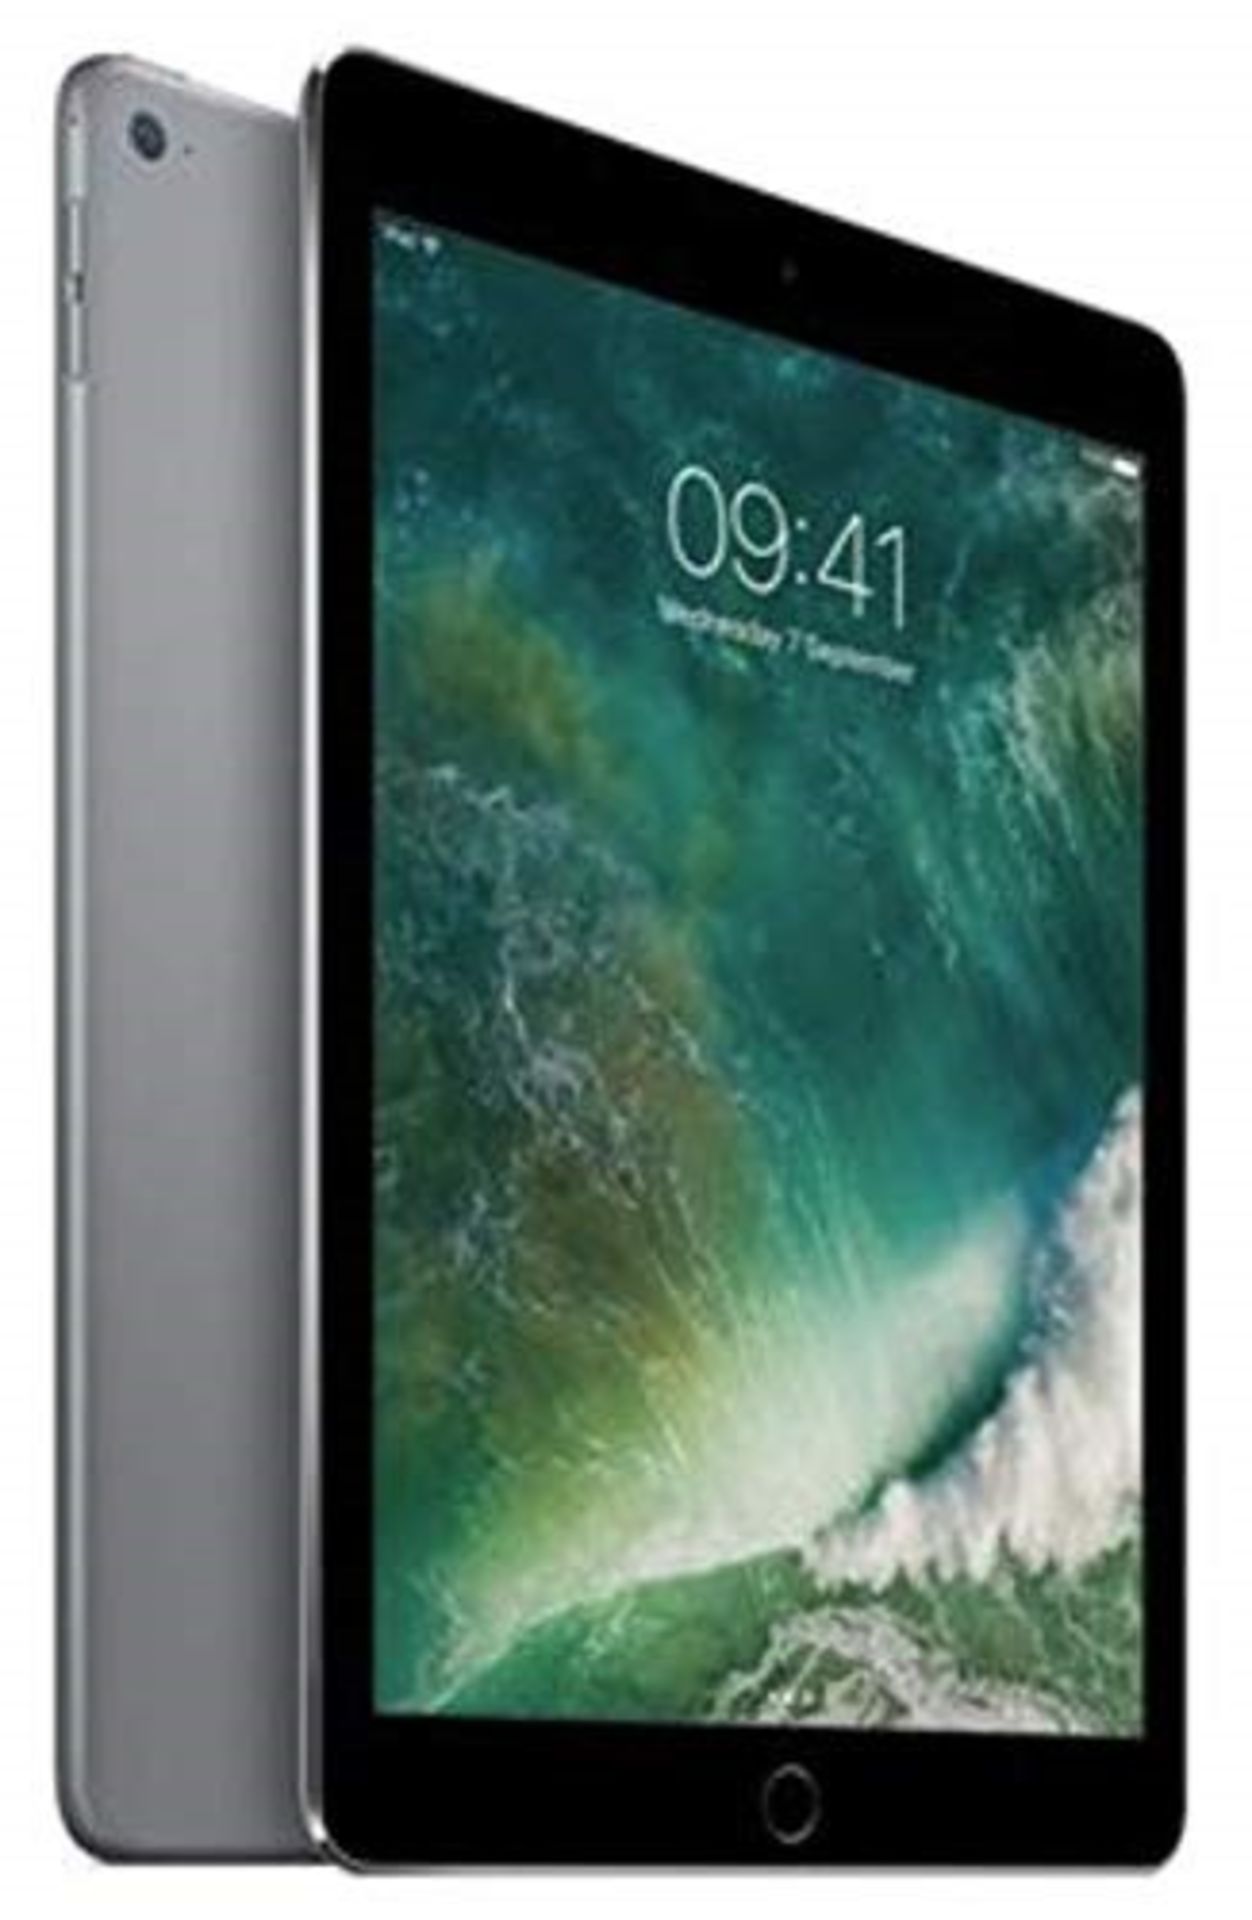 RRP £252.00 Apple iPad Air 2 - 32GB in Space Grey - WiFi NO ICLOUD